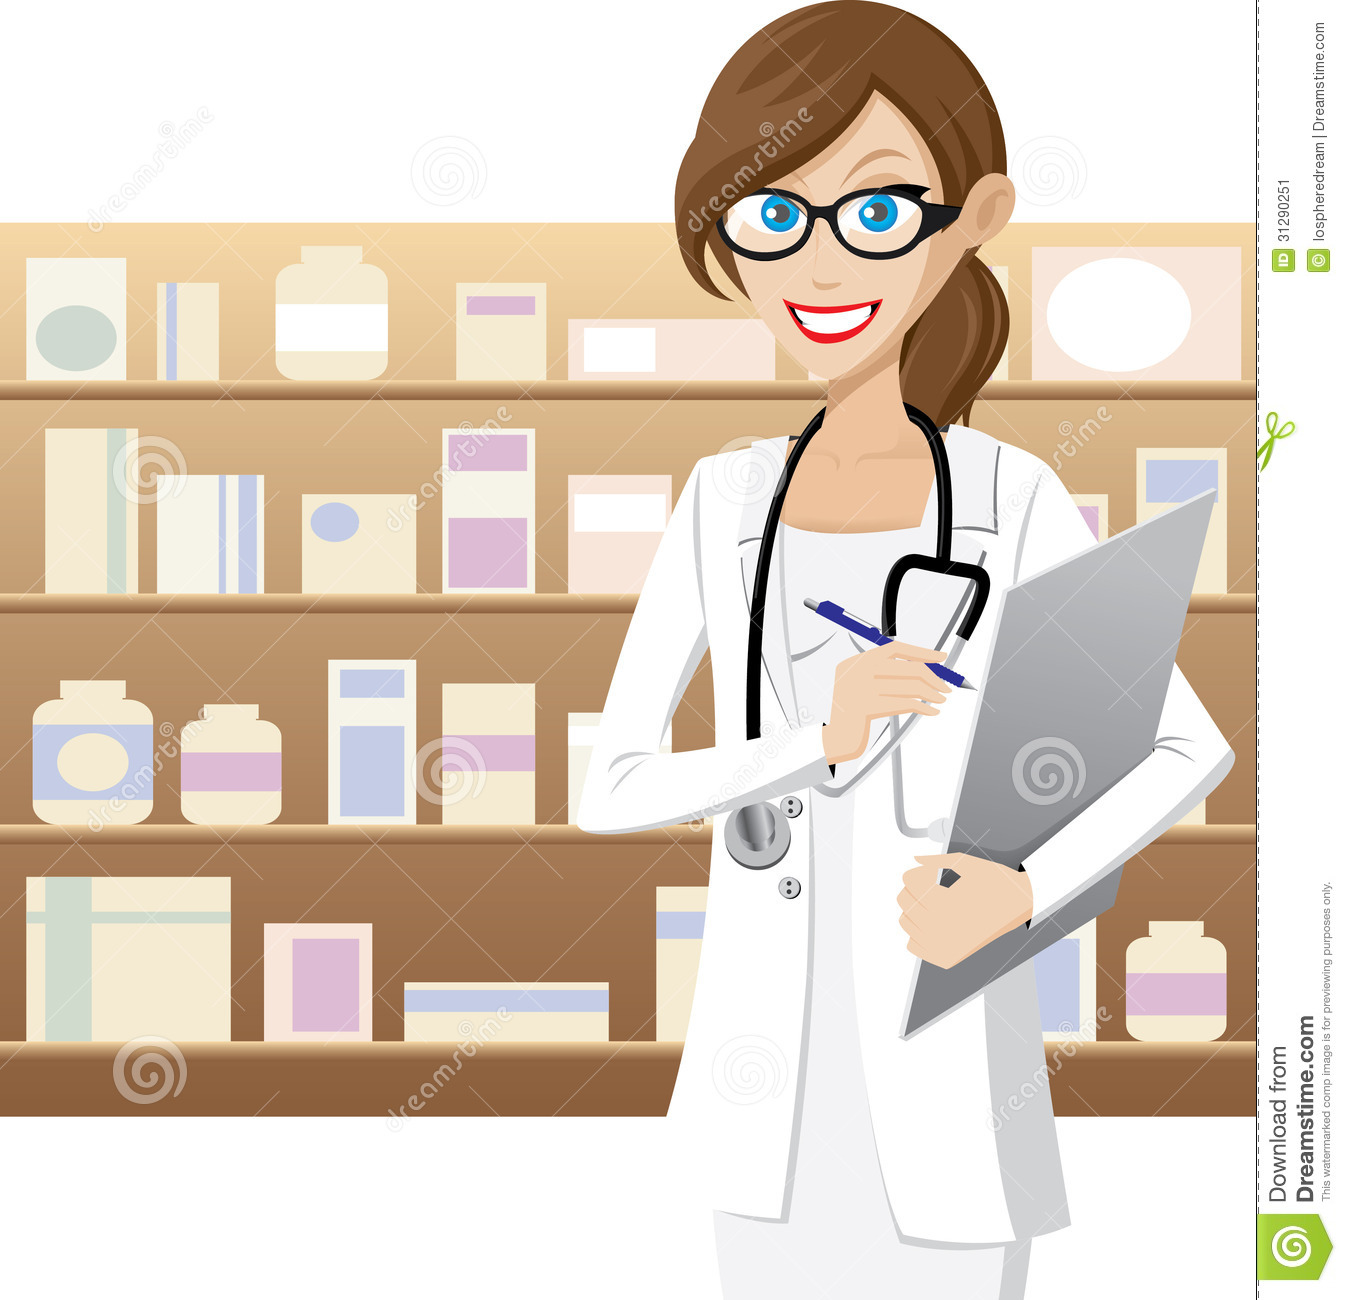 pharmacy technician clipart - photo #44